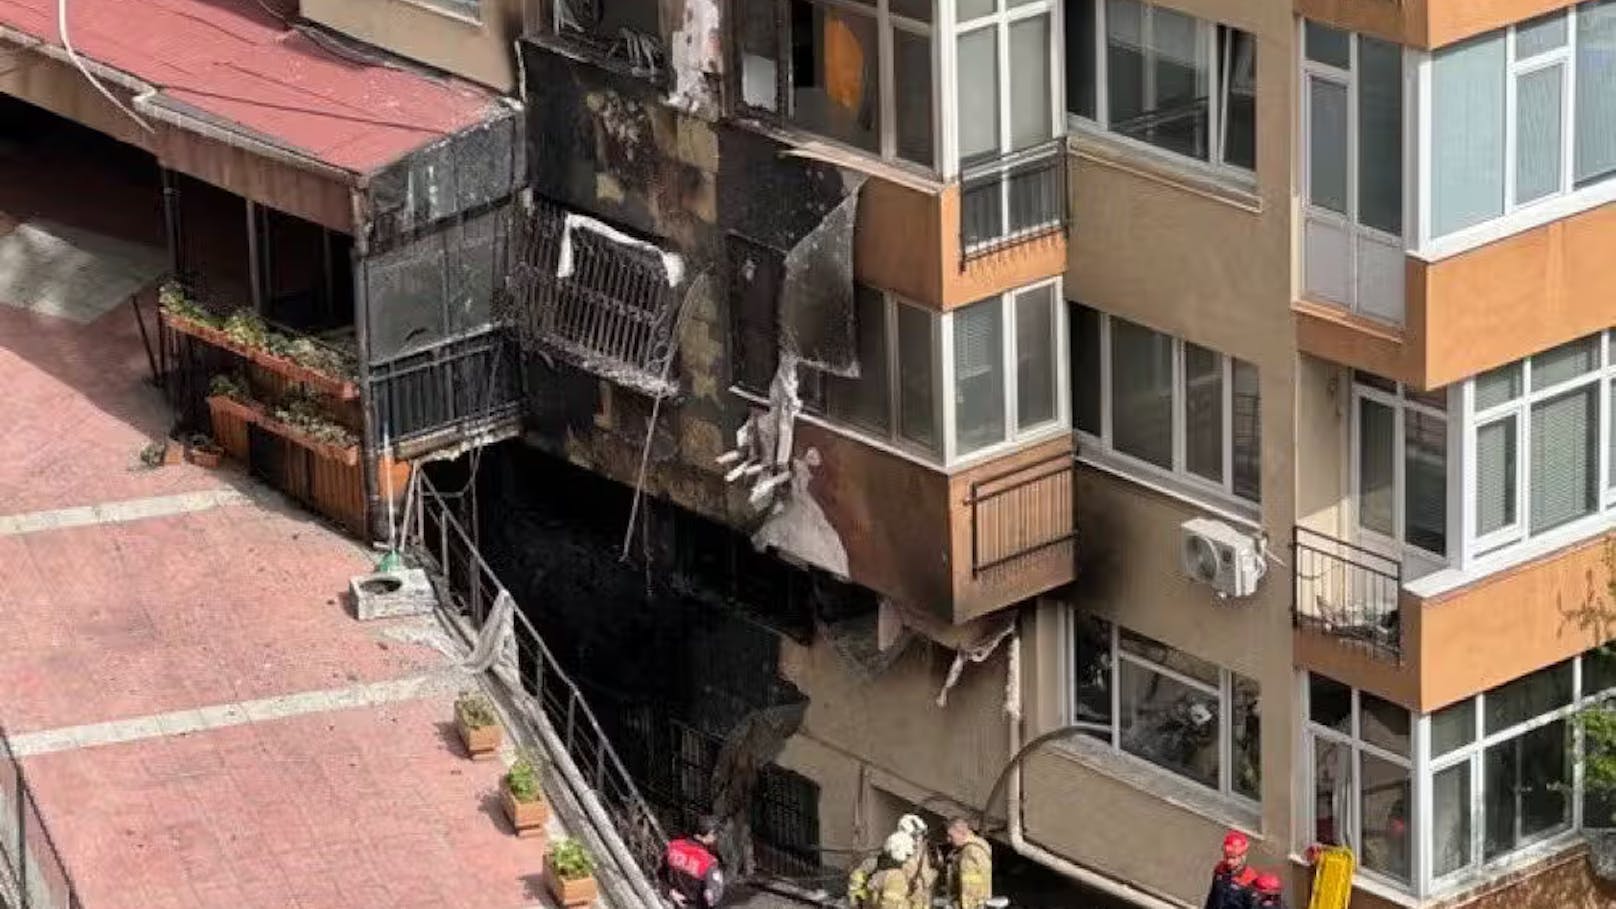 29 Tote in Istanbul – Feuer brach in Nachtclub aus